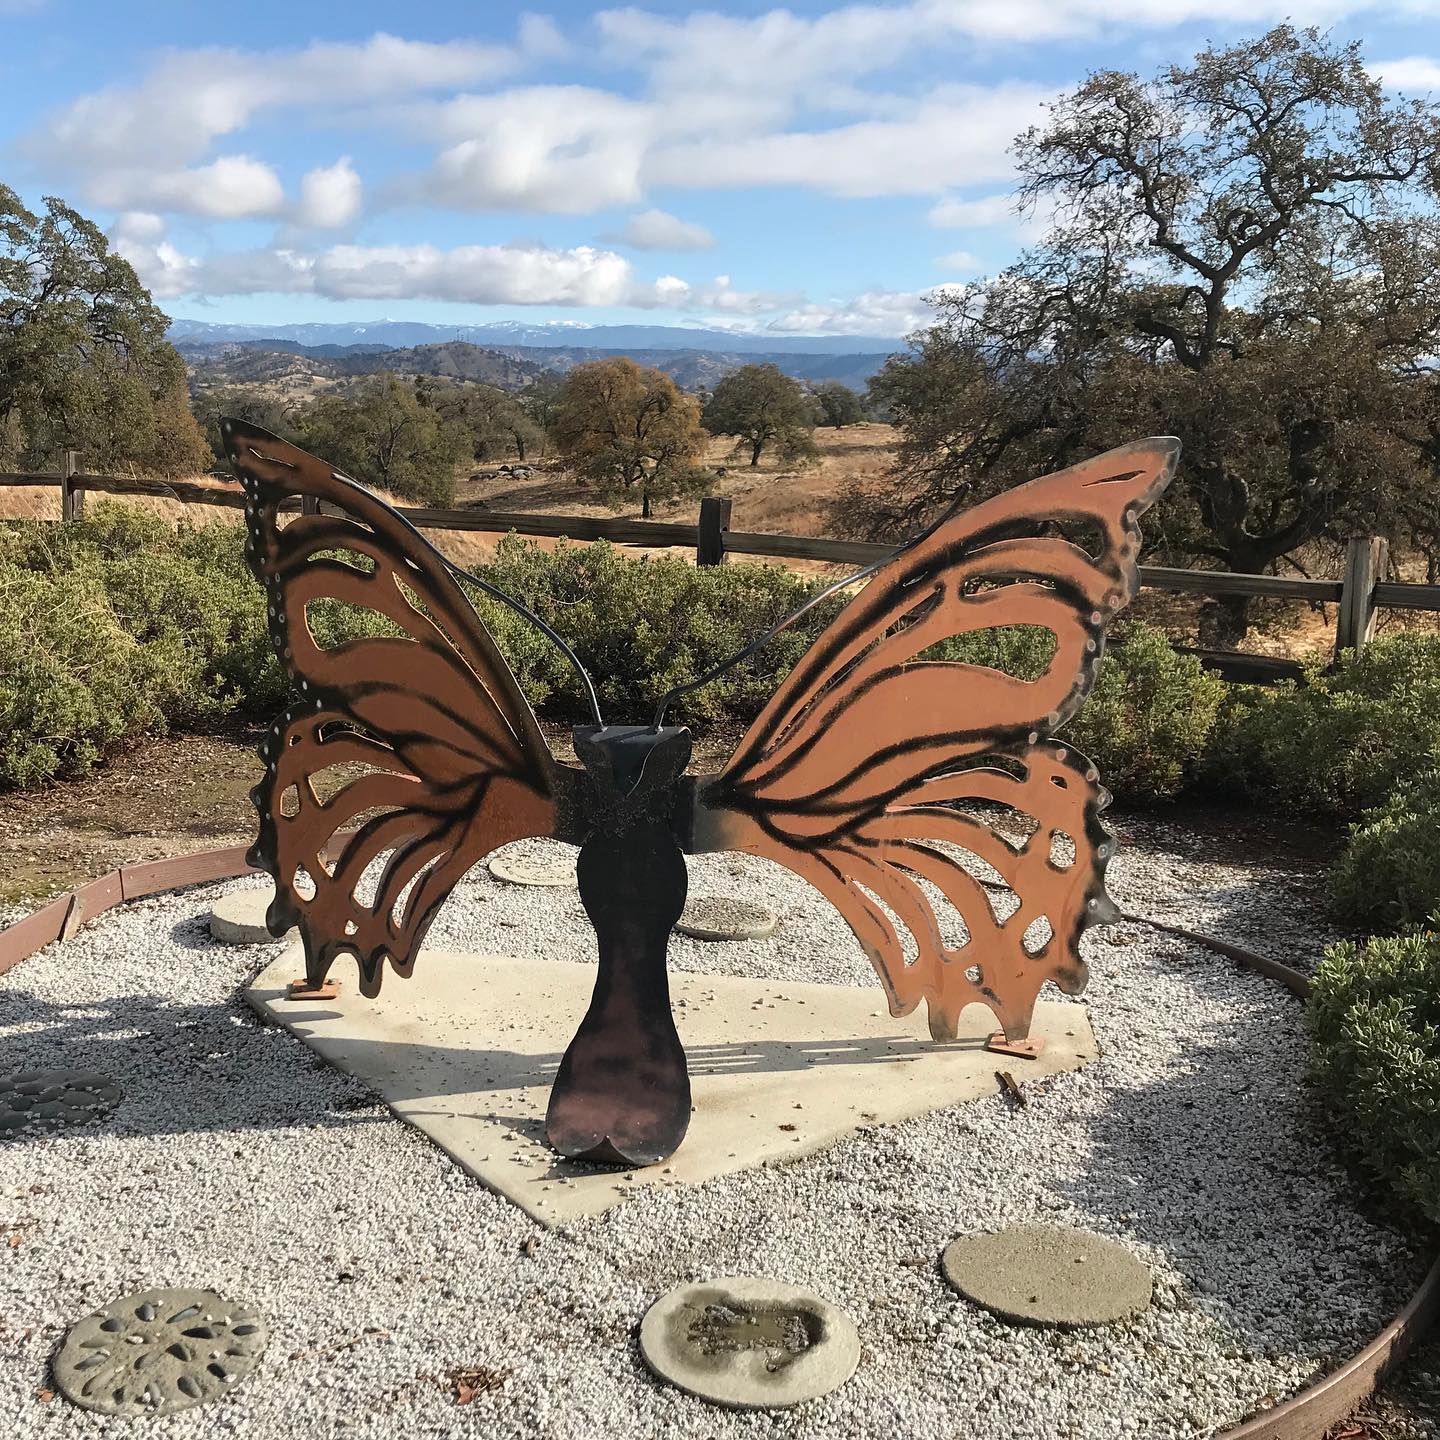 Sculpture of a butterfly in a garden